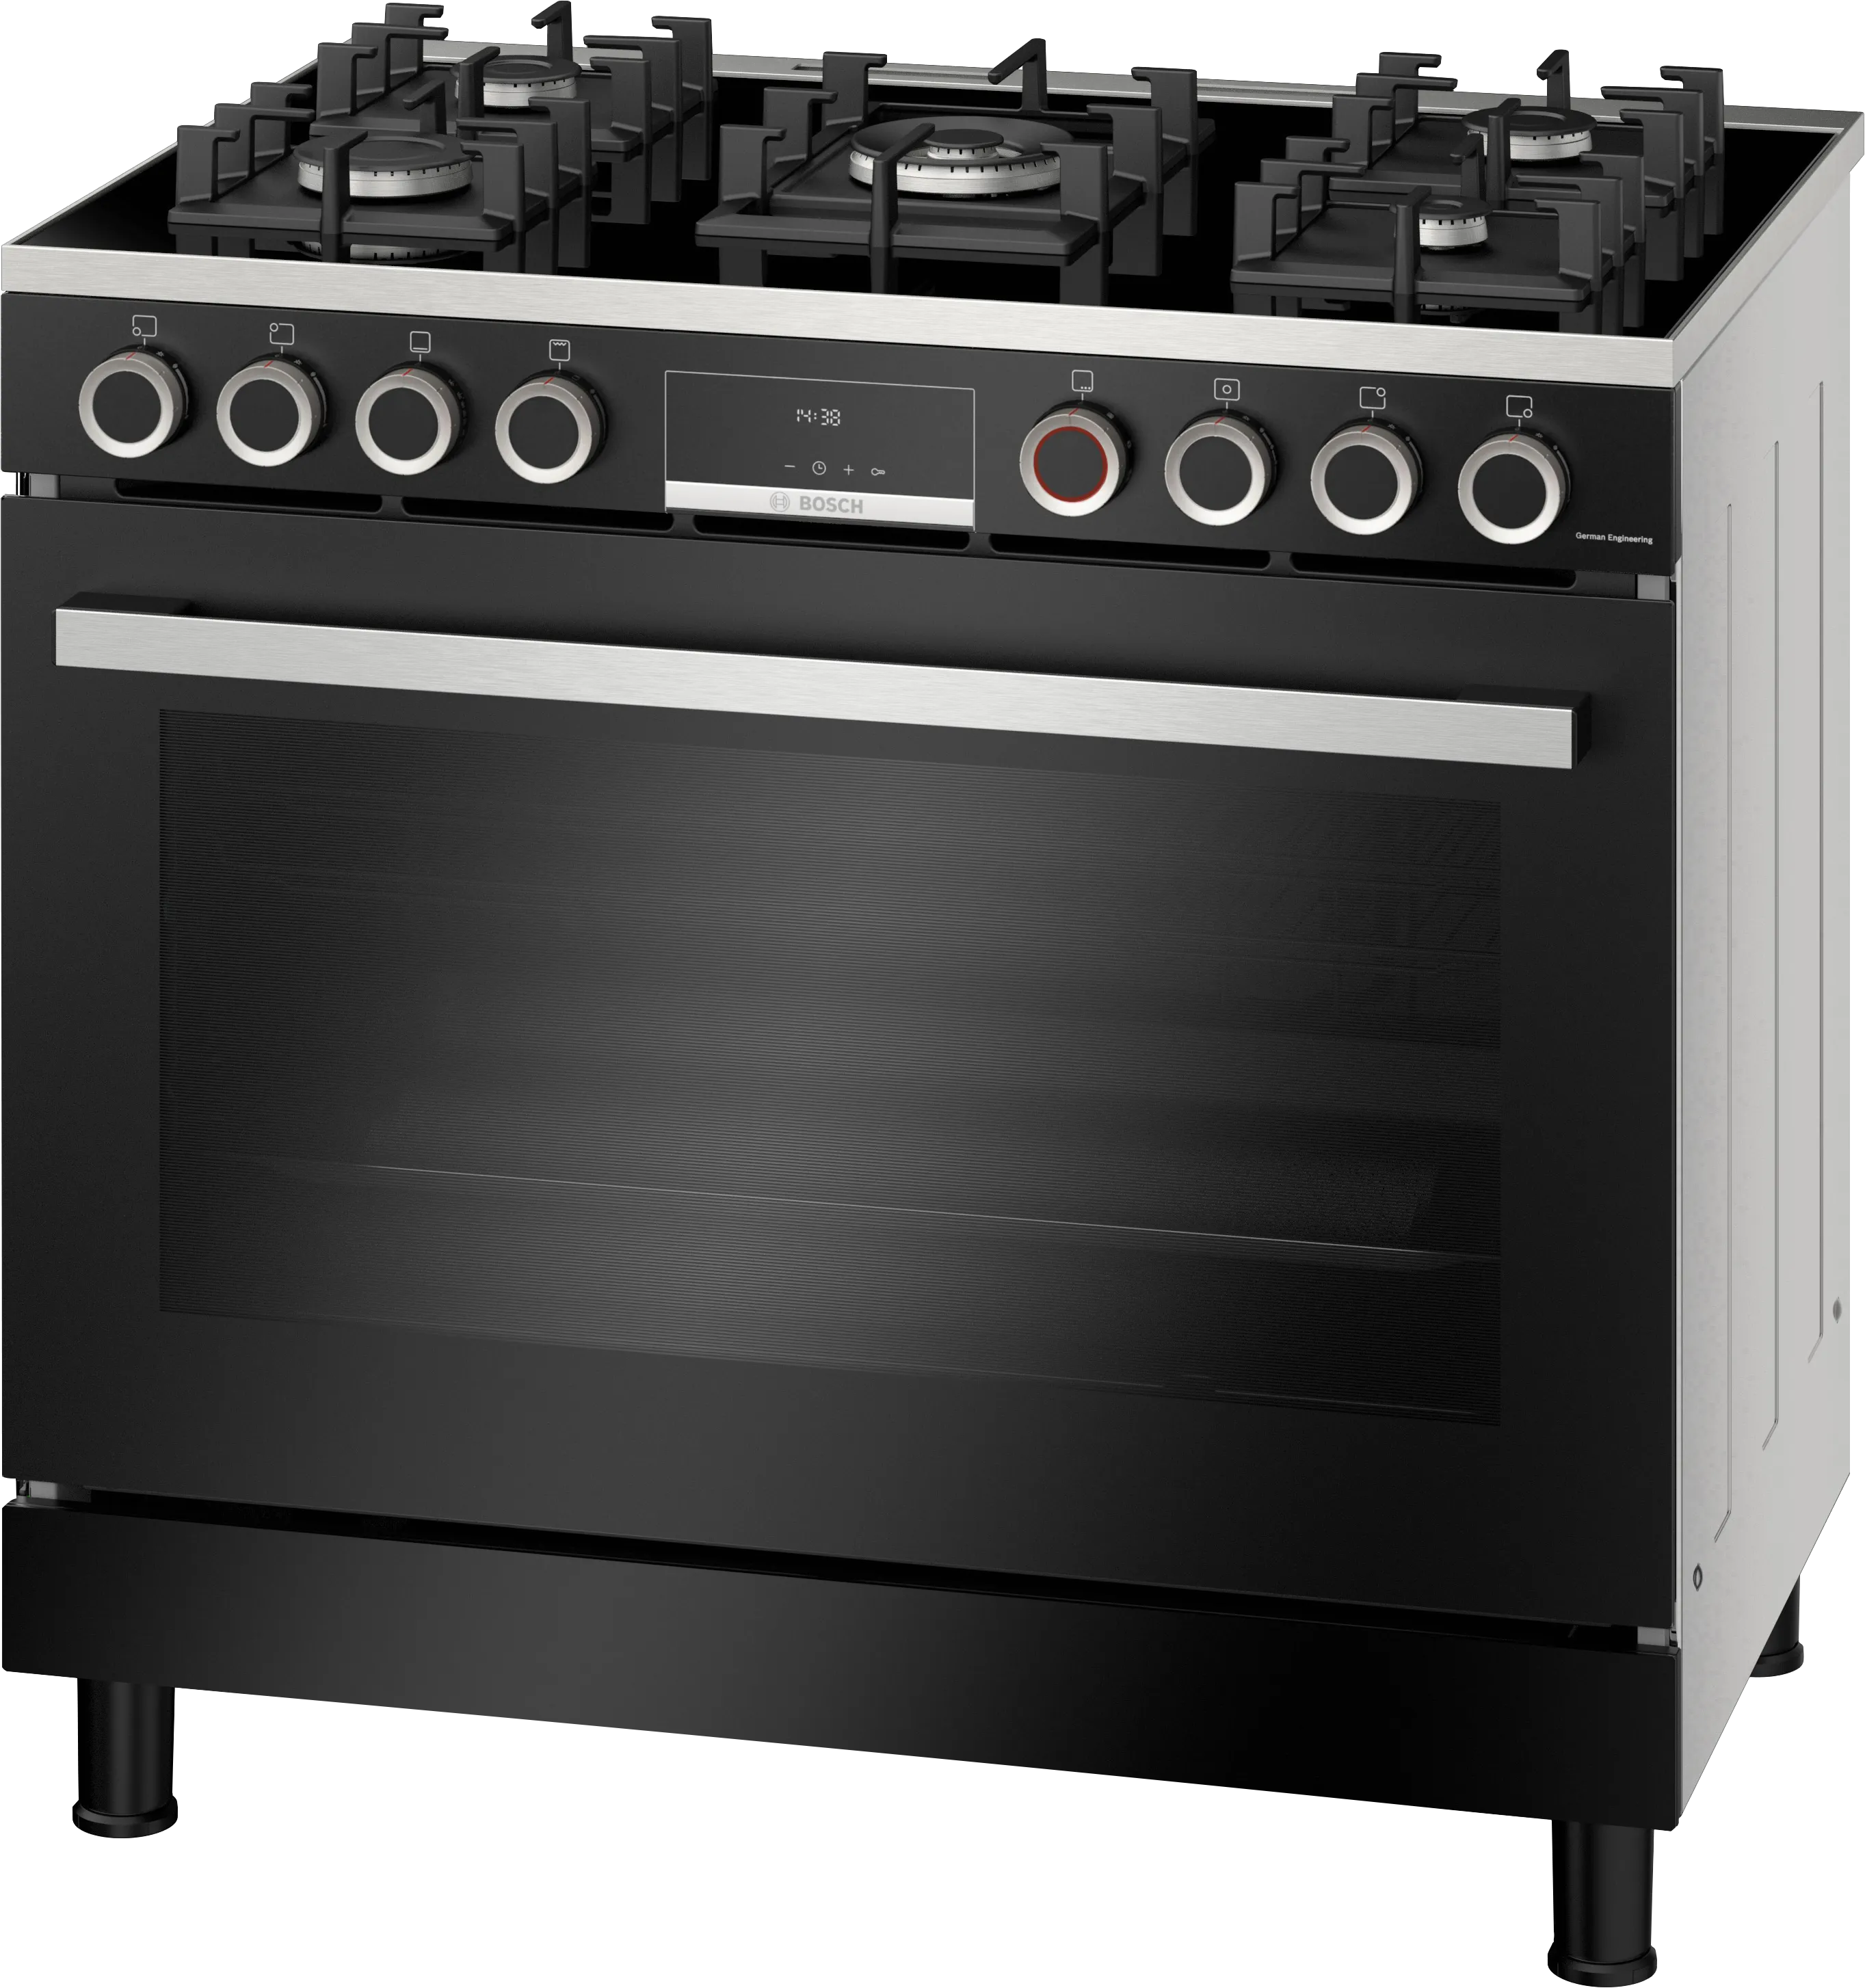 Series 8 Gas range cooker Black 